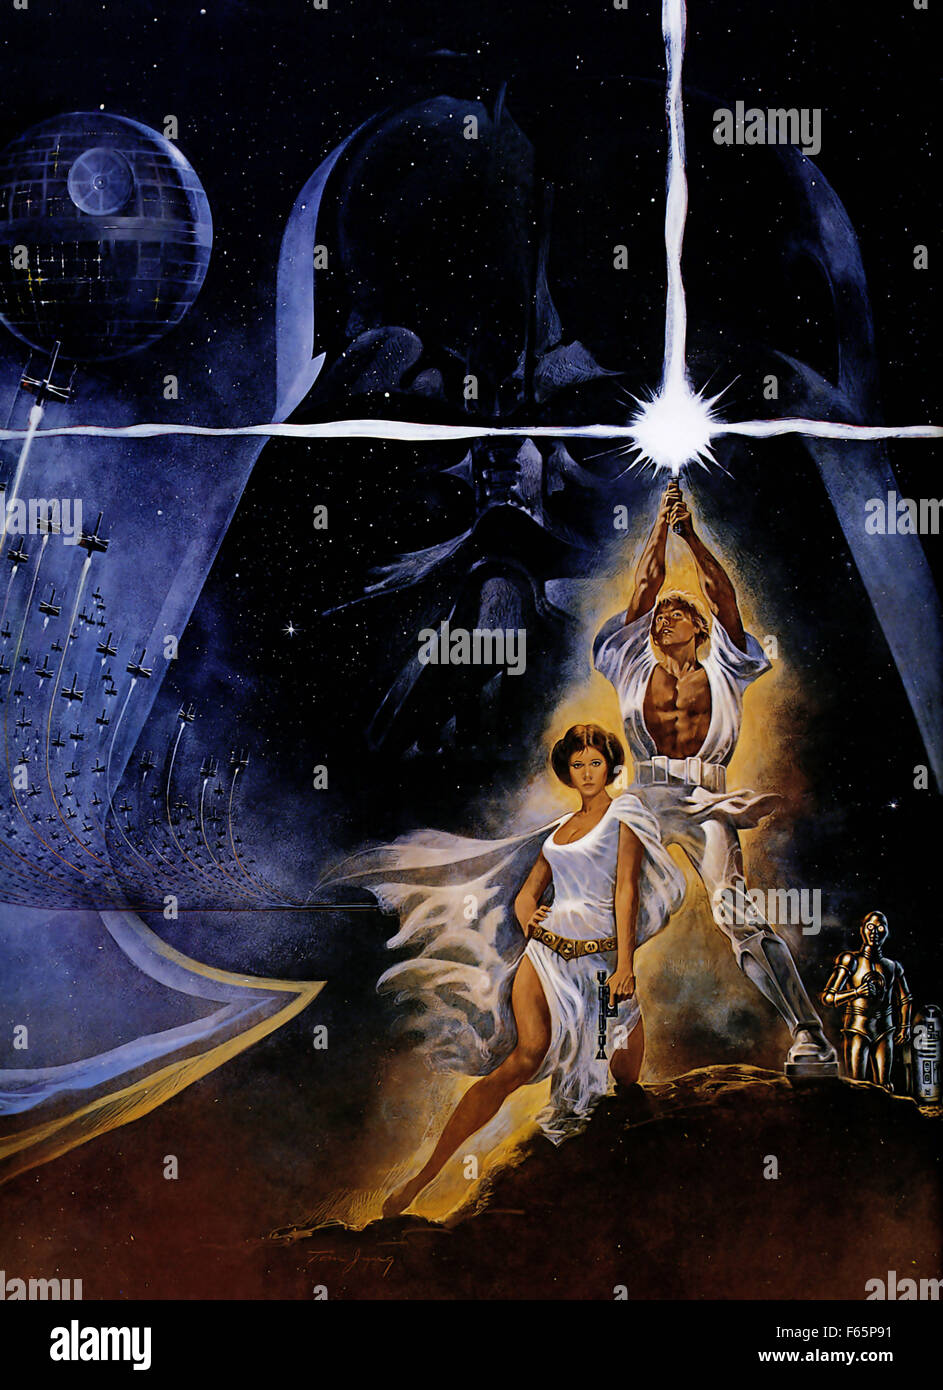 Affiche cinema Star Wars Un nouvel espoir 1977